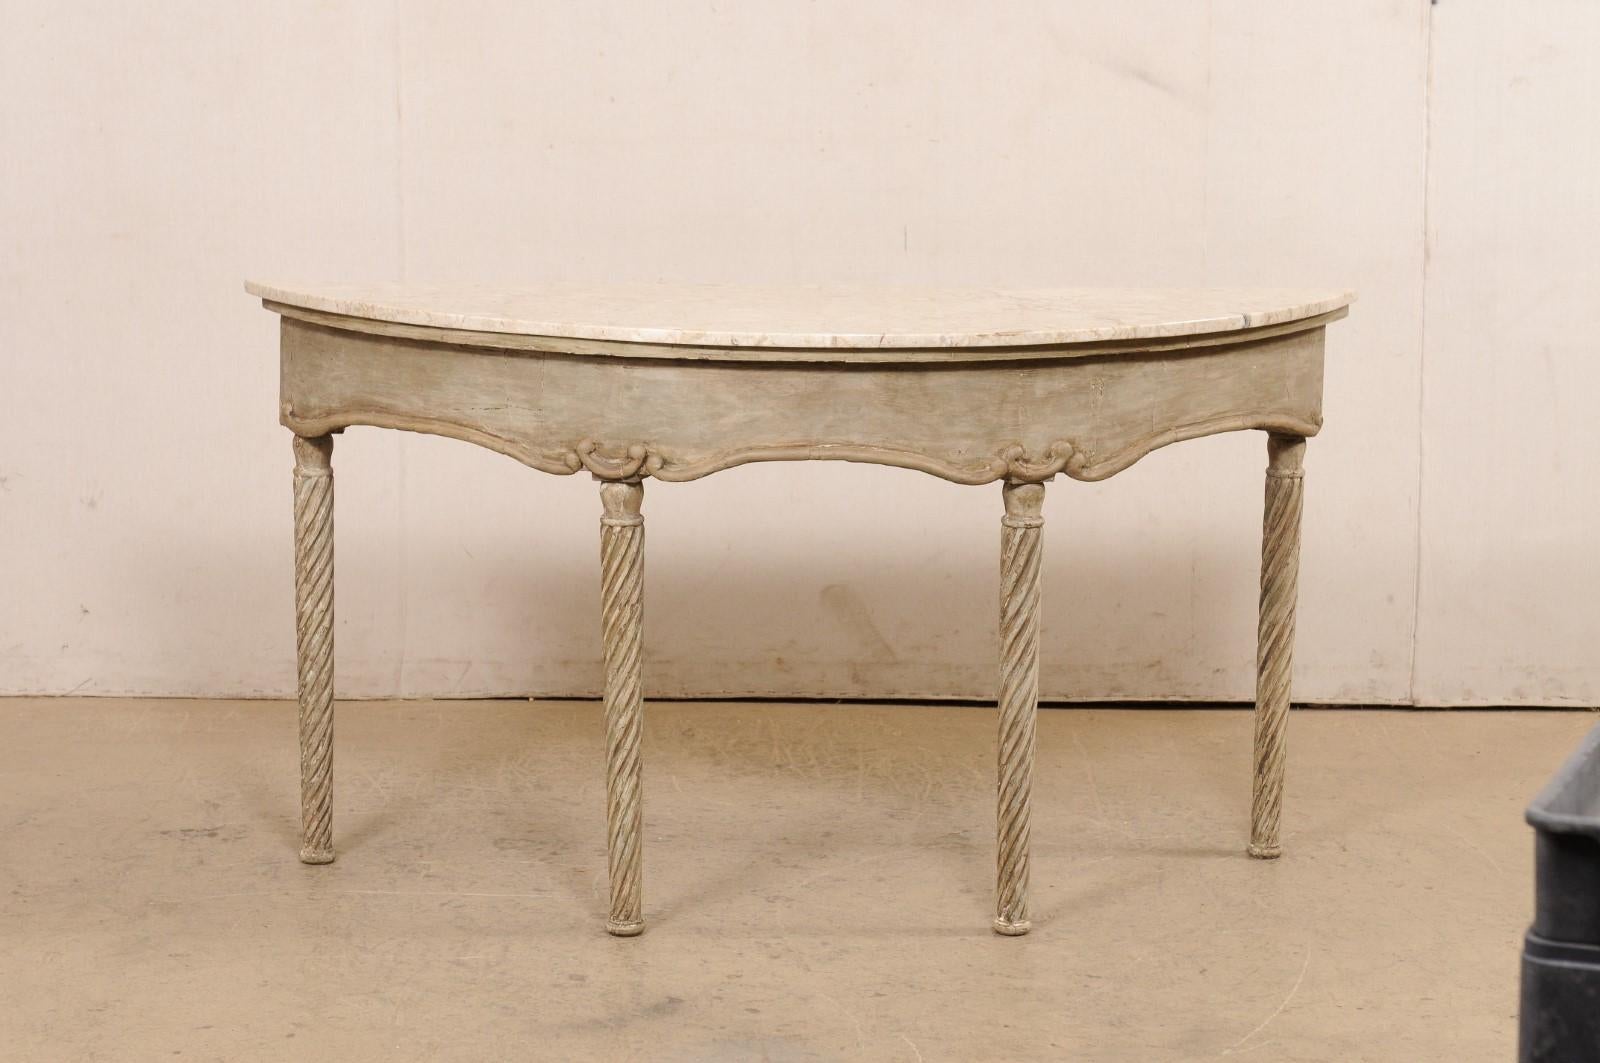 Console française en bois sculpté et marbre du XVIIIe siècle. Cette table ancienne de France a une belle forme oblongue en demi, avec un plateau en marbre qui repose sur un tablier avec une jupe légèrement incurvée, et présenté sur quatre pieds